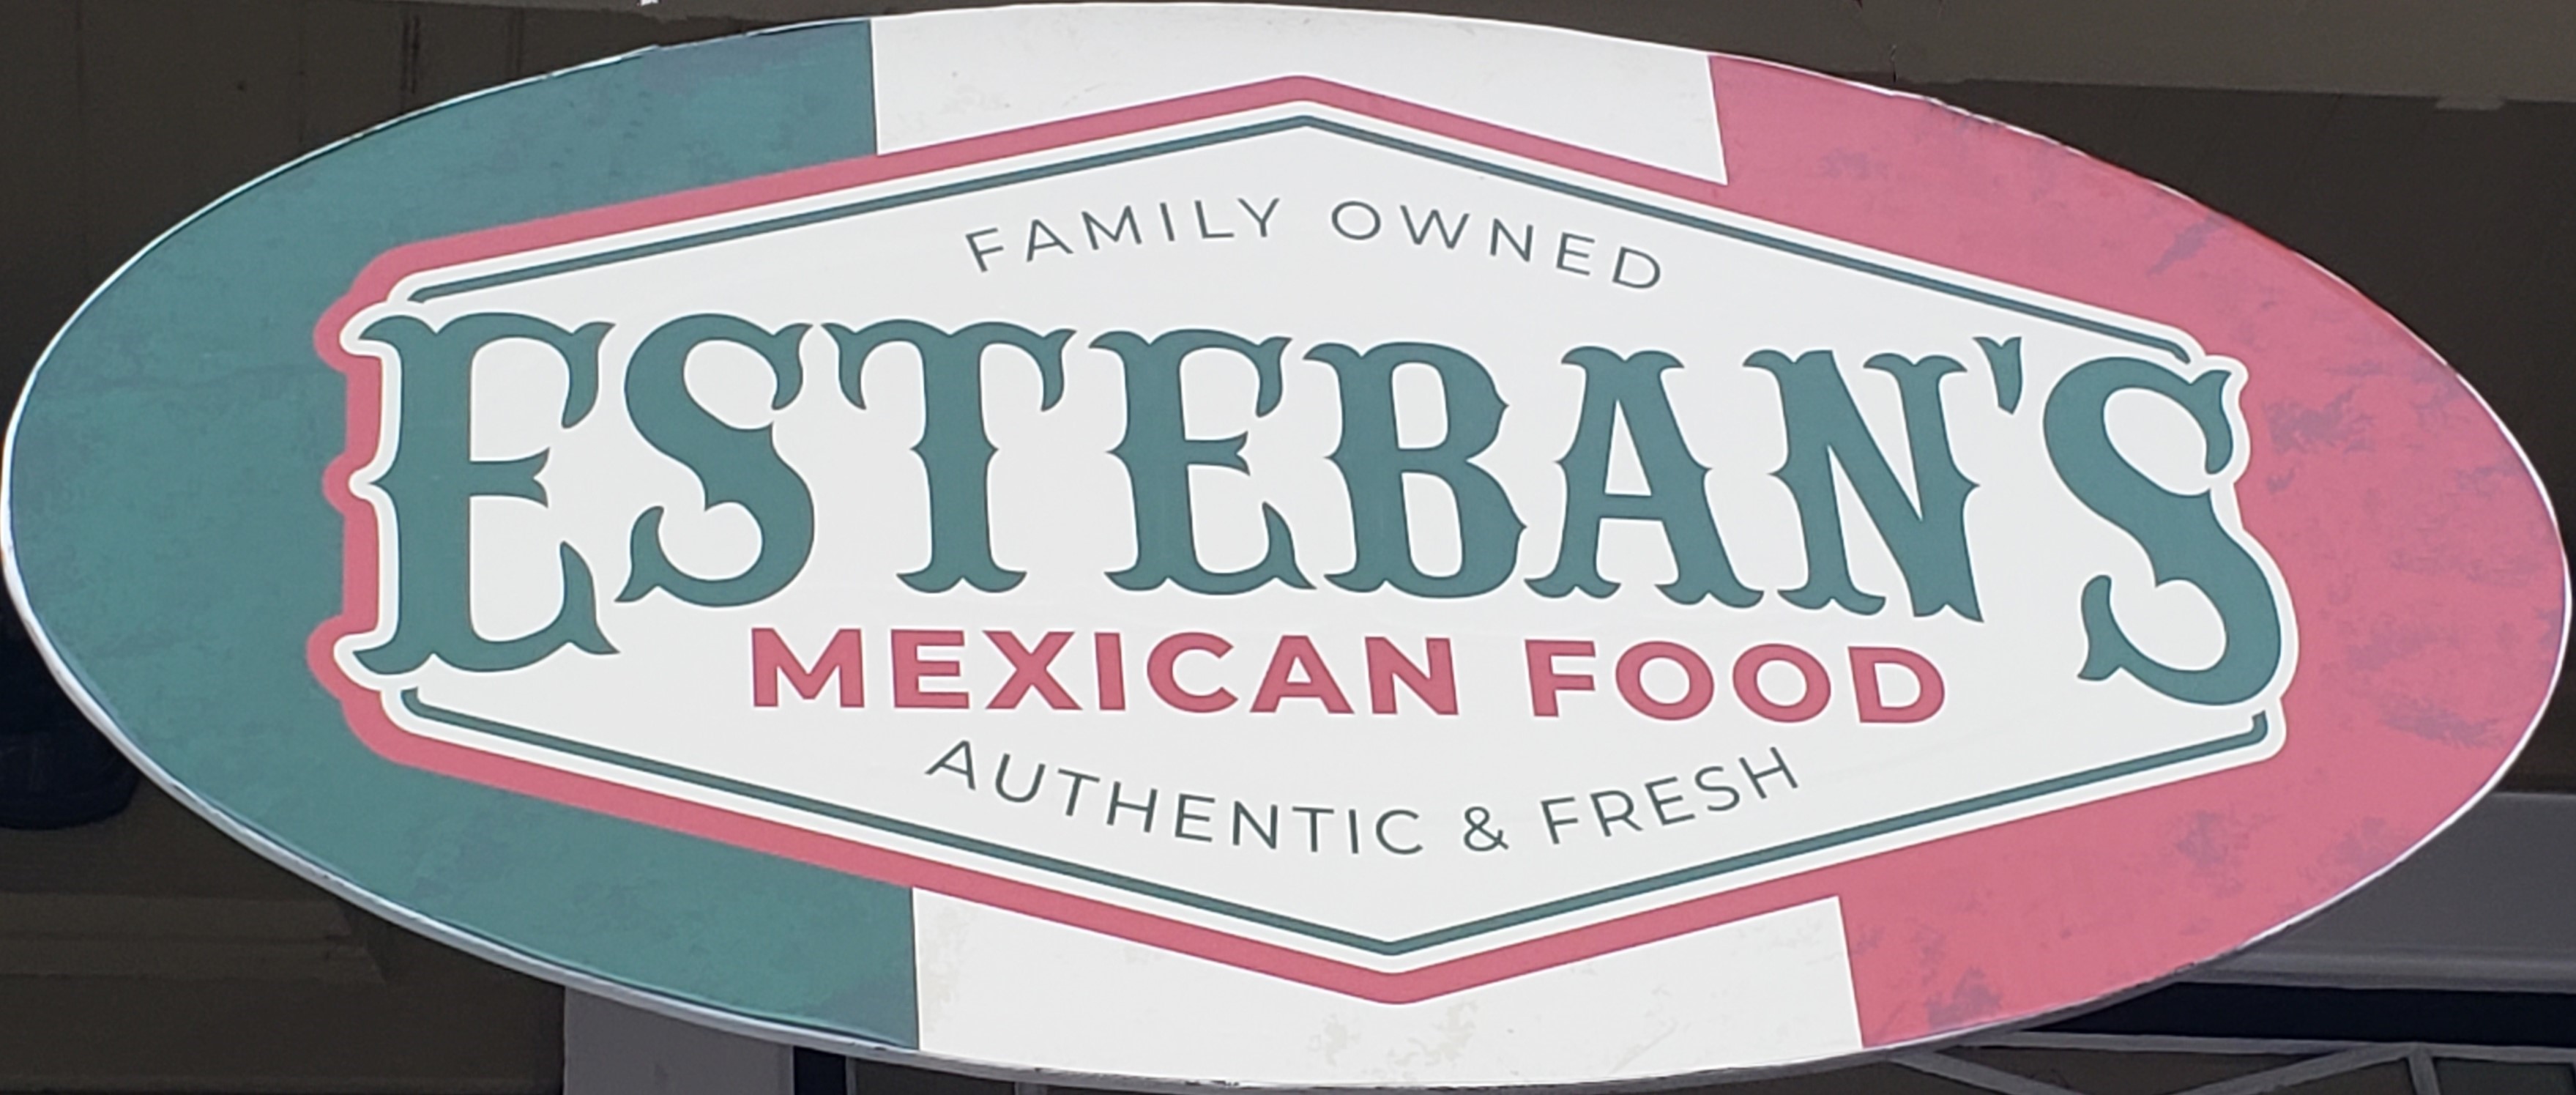 Esteban's Mexican Restaurant